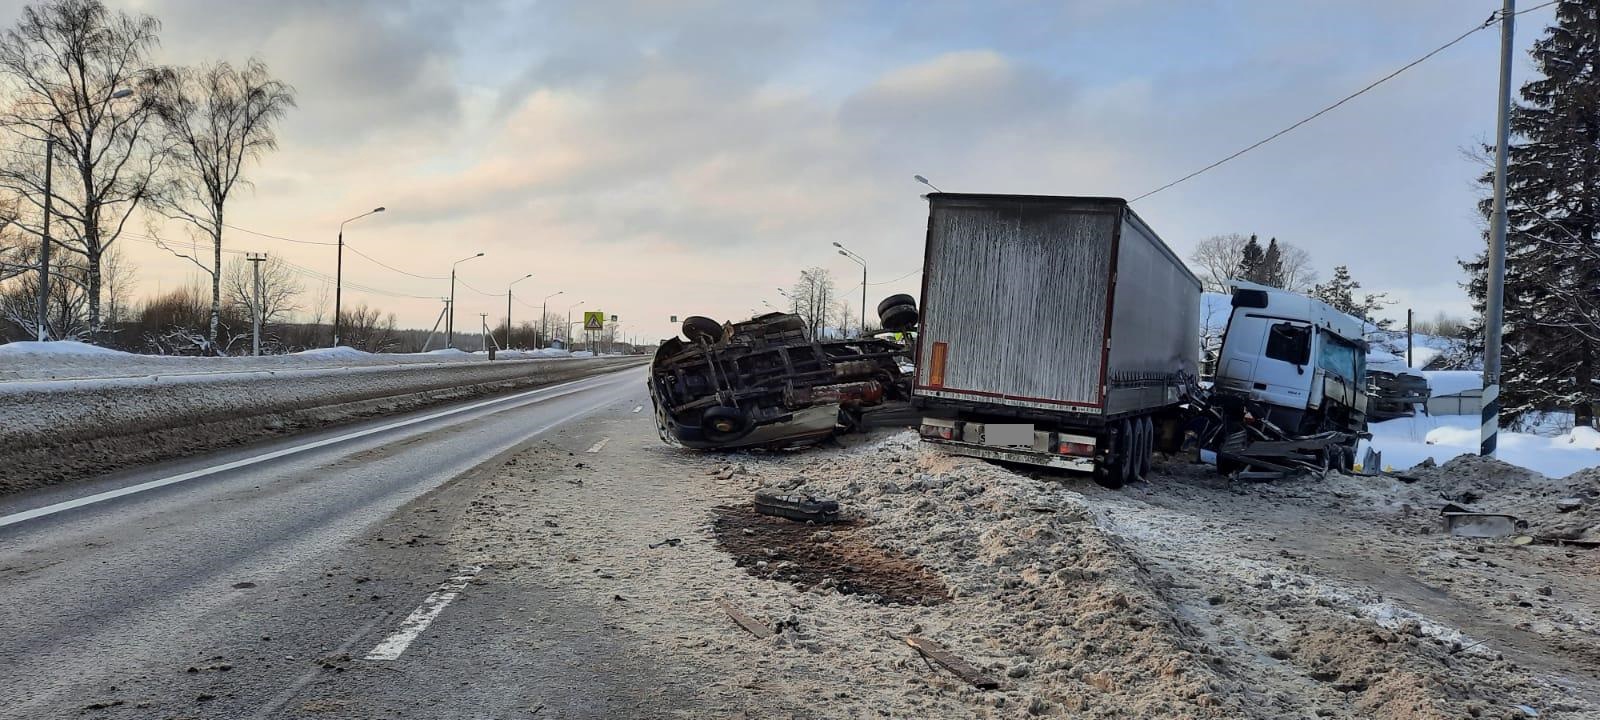 В Тверской области пьяный дальнобойщик снес на трассе фургон дорожной службы